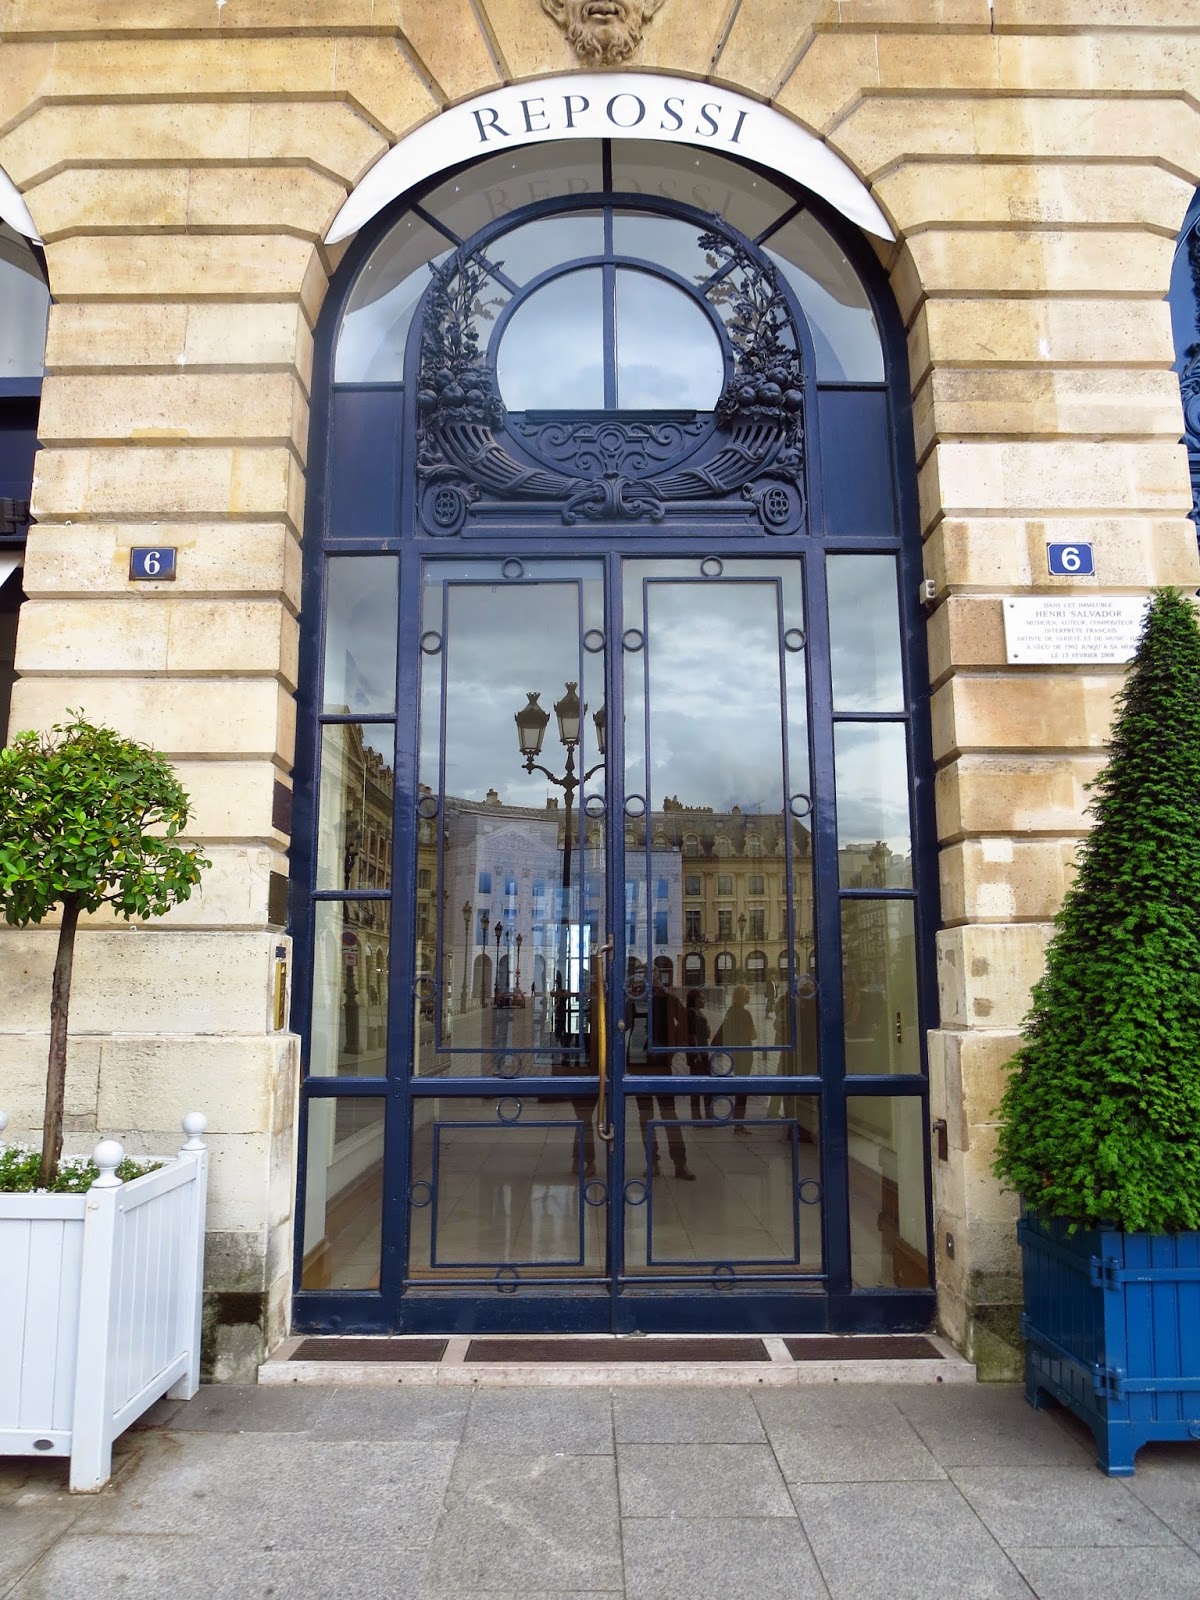 Metal and glass door in Paris, France